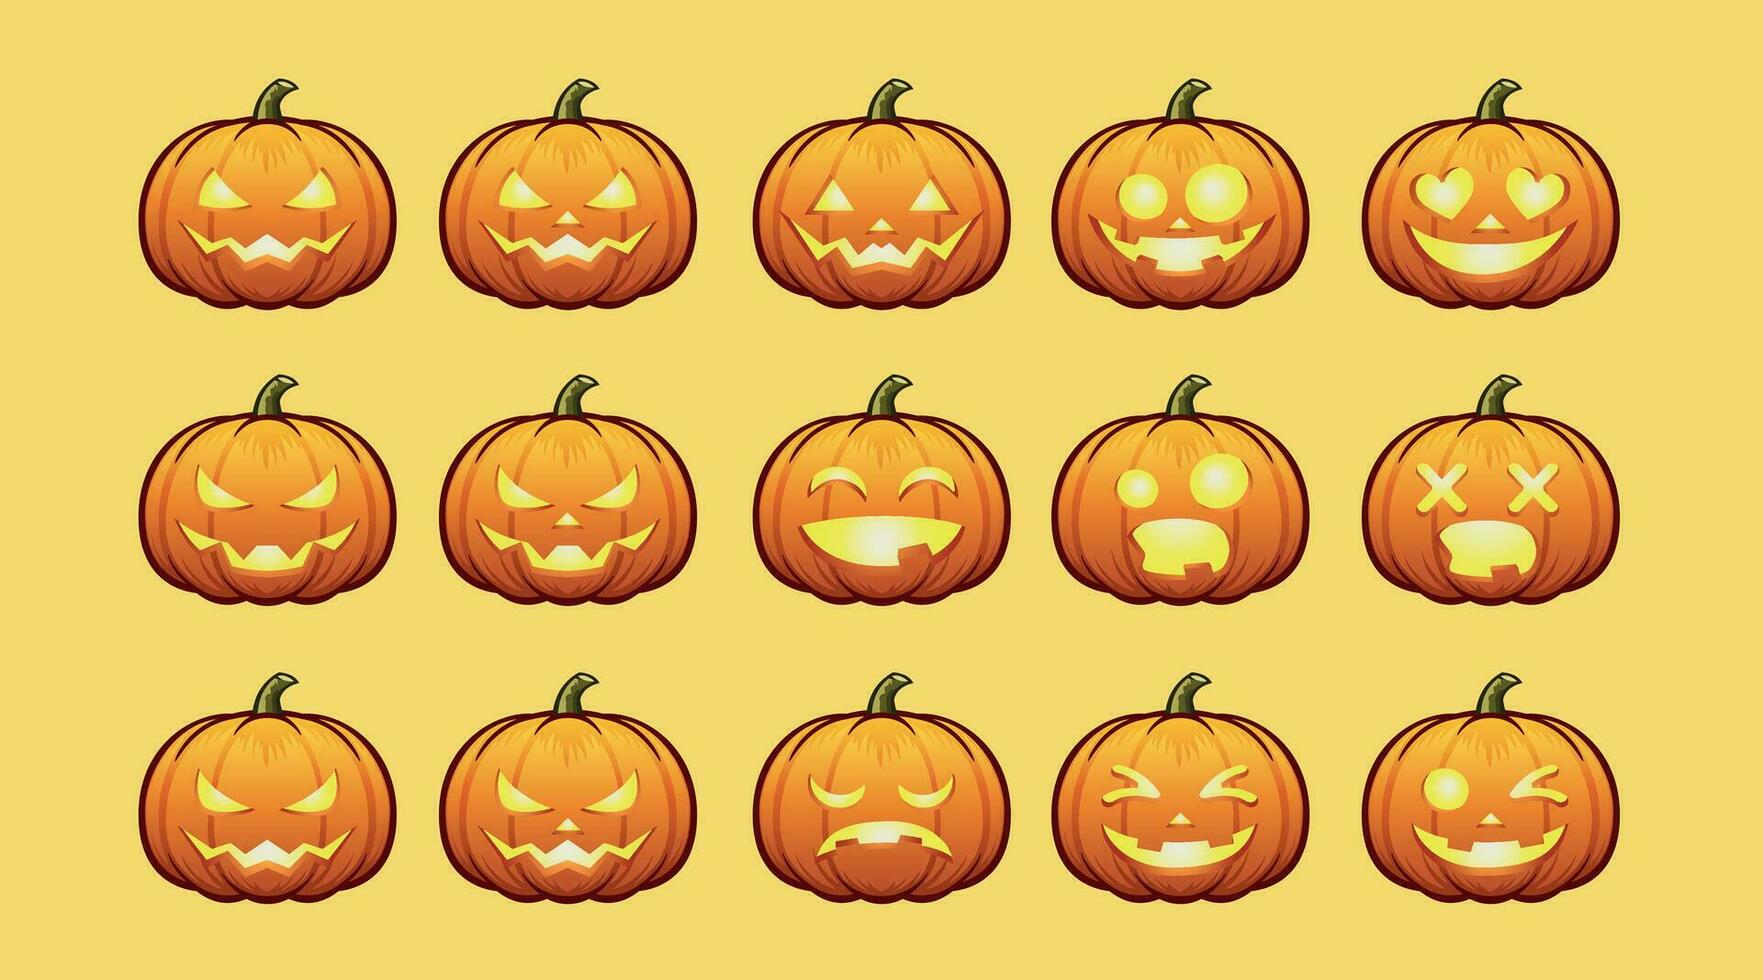 Halloween Pumpkins 1 vector